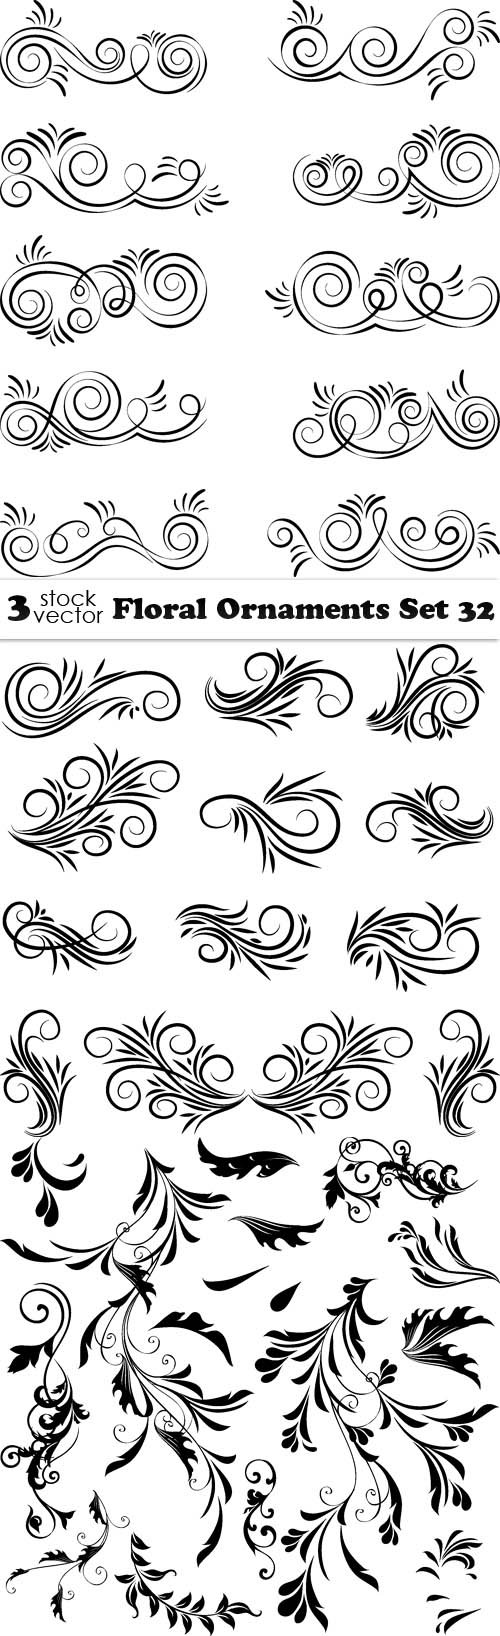 Vectors - Floral Ornaments Set 32